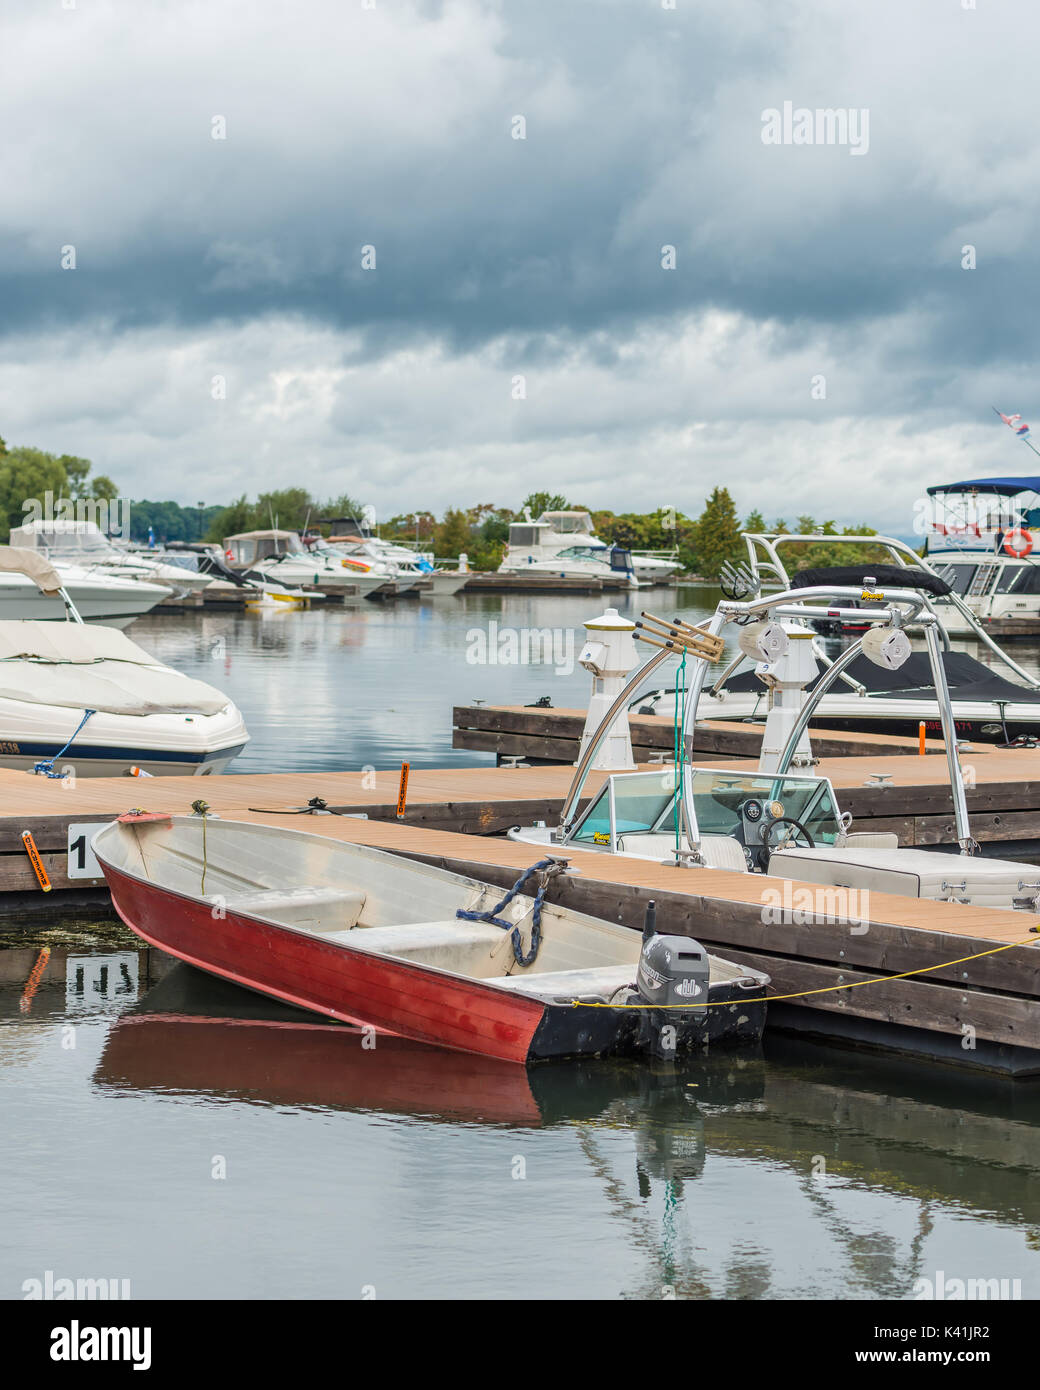 Roja pequeña lancha fuera borda está acoplado entre grandes barcos más caros en Orillia Ontario mostrando que el paseo en bote puede ser disfrutado por todos. Foto de stock